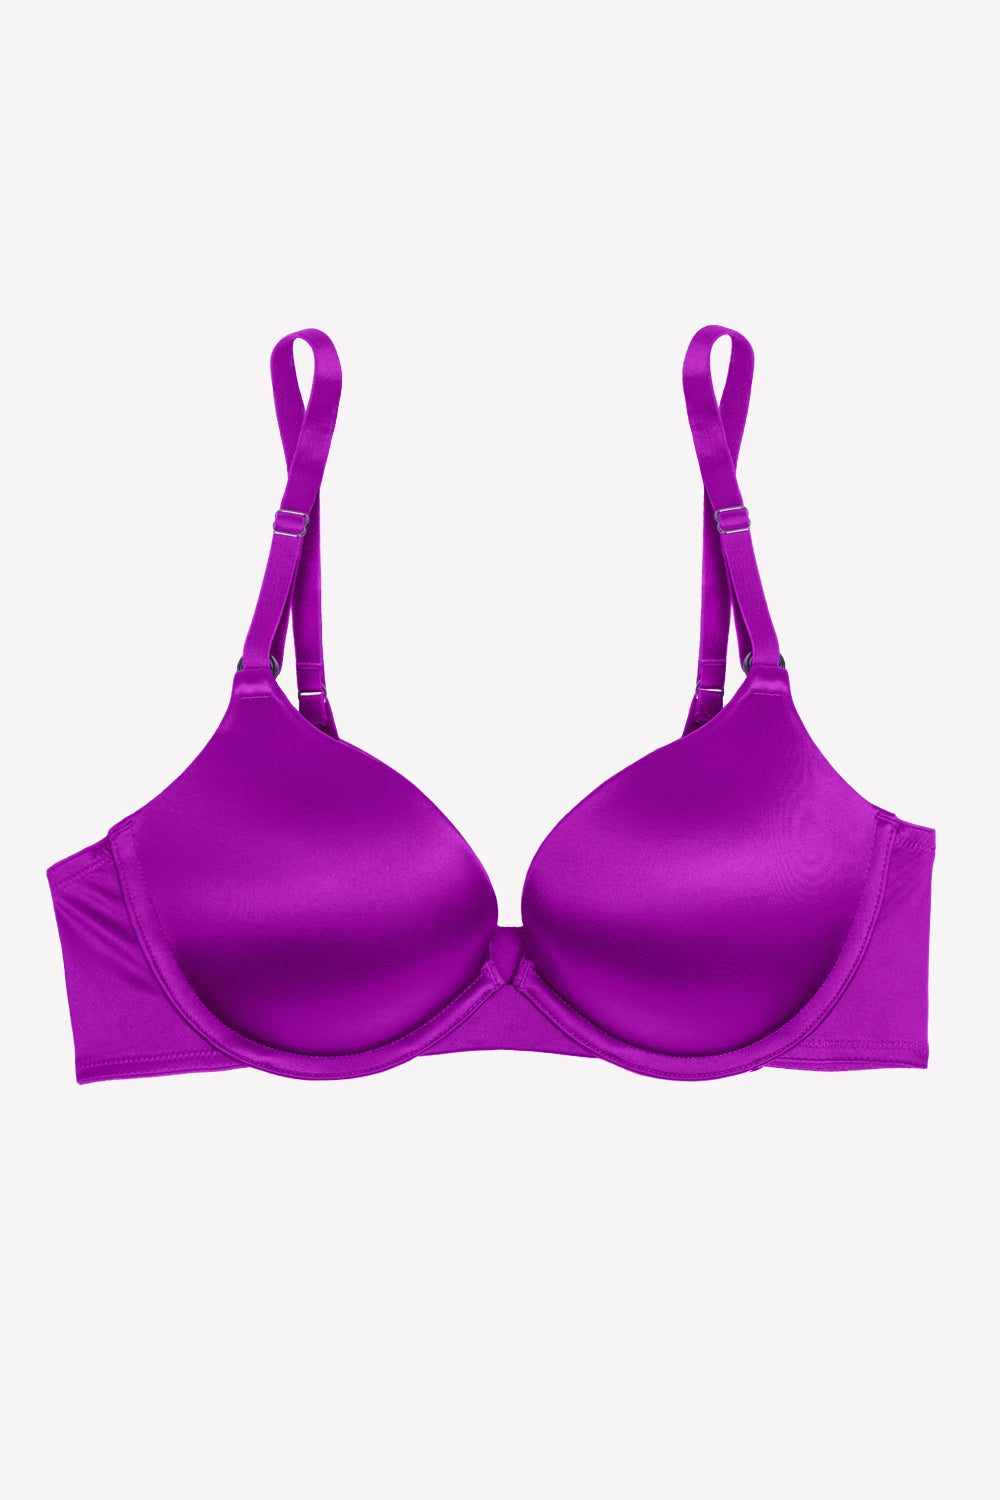 Lilac Seductive push-up bra, Calvin Klein, Shop Push-Up Bras Online